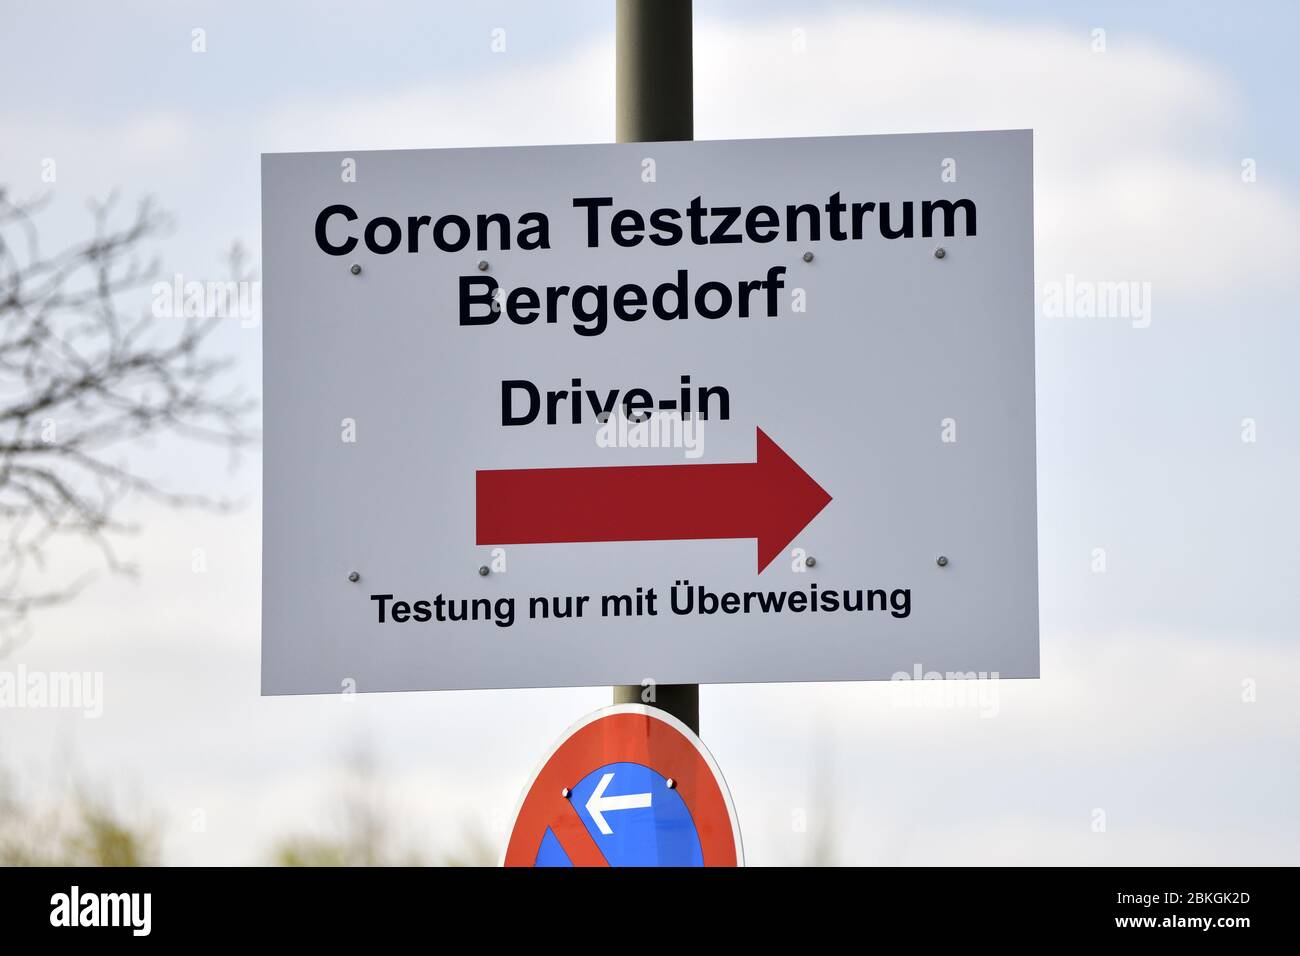 Guide du Corona Test Centre Bergedorf à Hambourg, Allemagne, Europe / Wegweiser zum Corona Testzentrum Bergedorf à Hambourg, Allemagne, Allemagne, Europa Banque D'Images